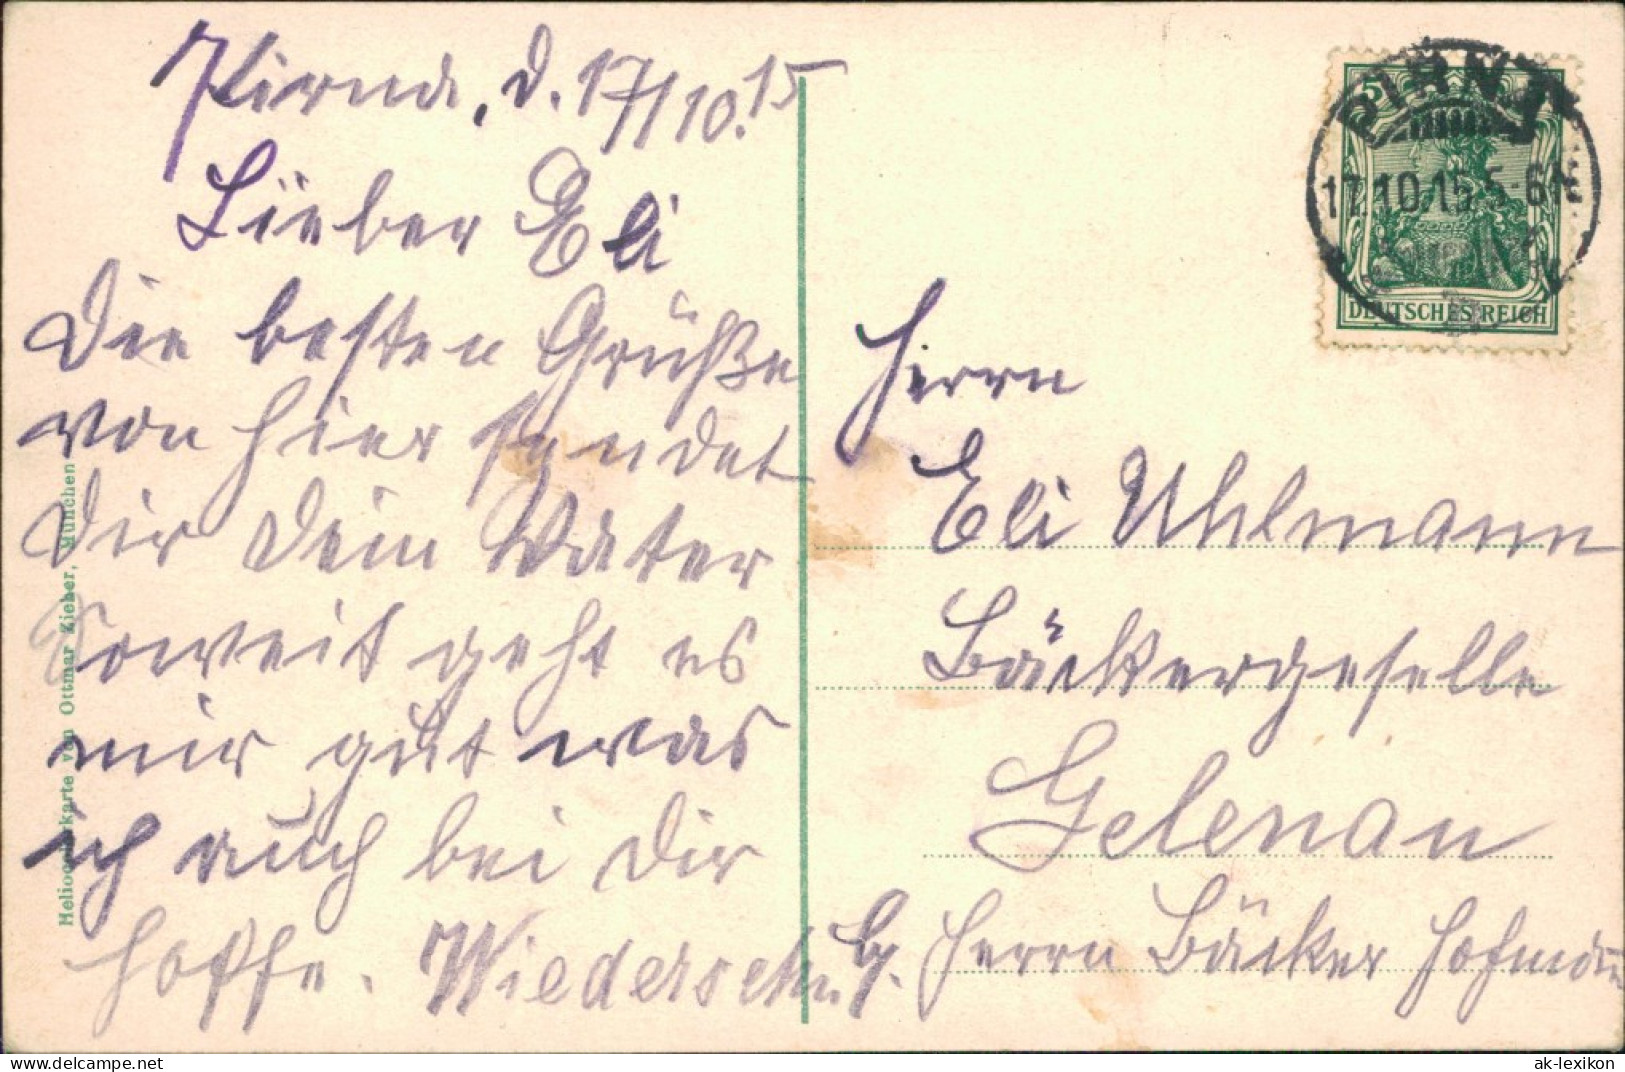 Ansichtskarte Pirna Brücke, Obermarkt, Dampfer, Friedenspark 1915 - Pirna